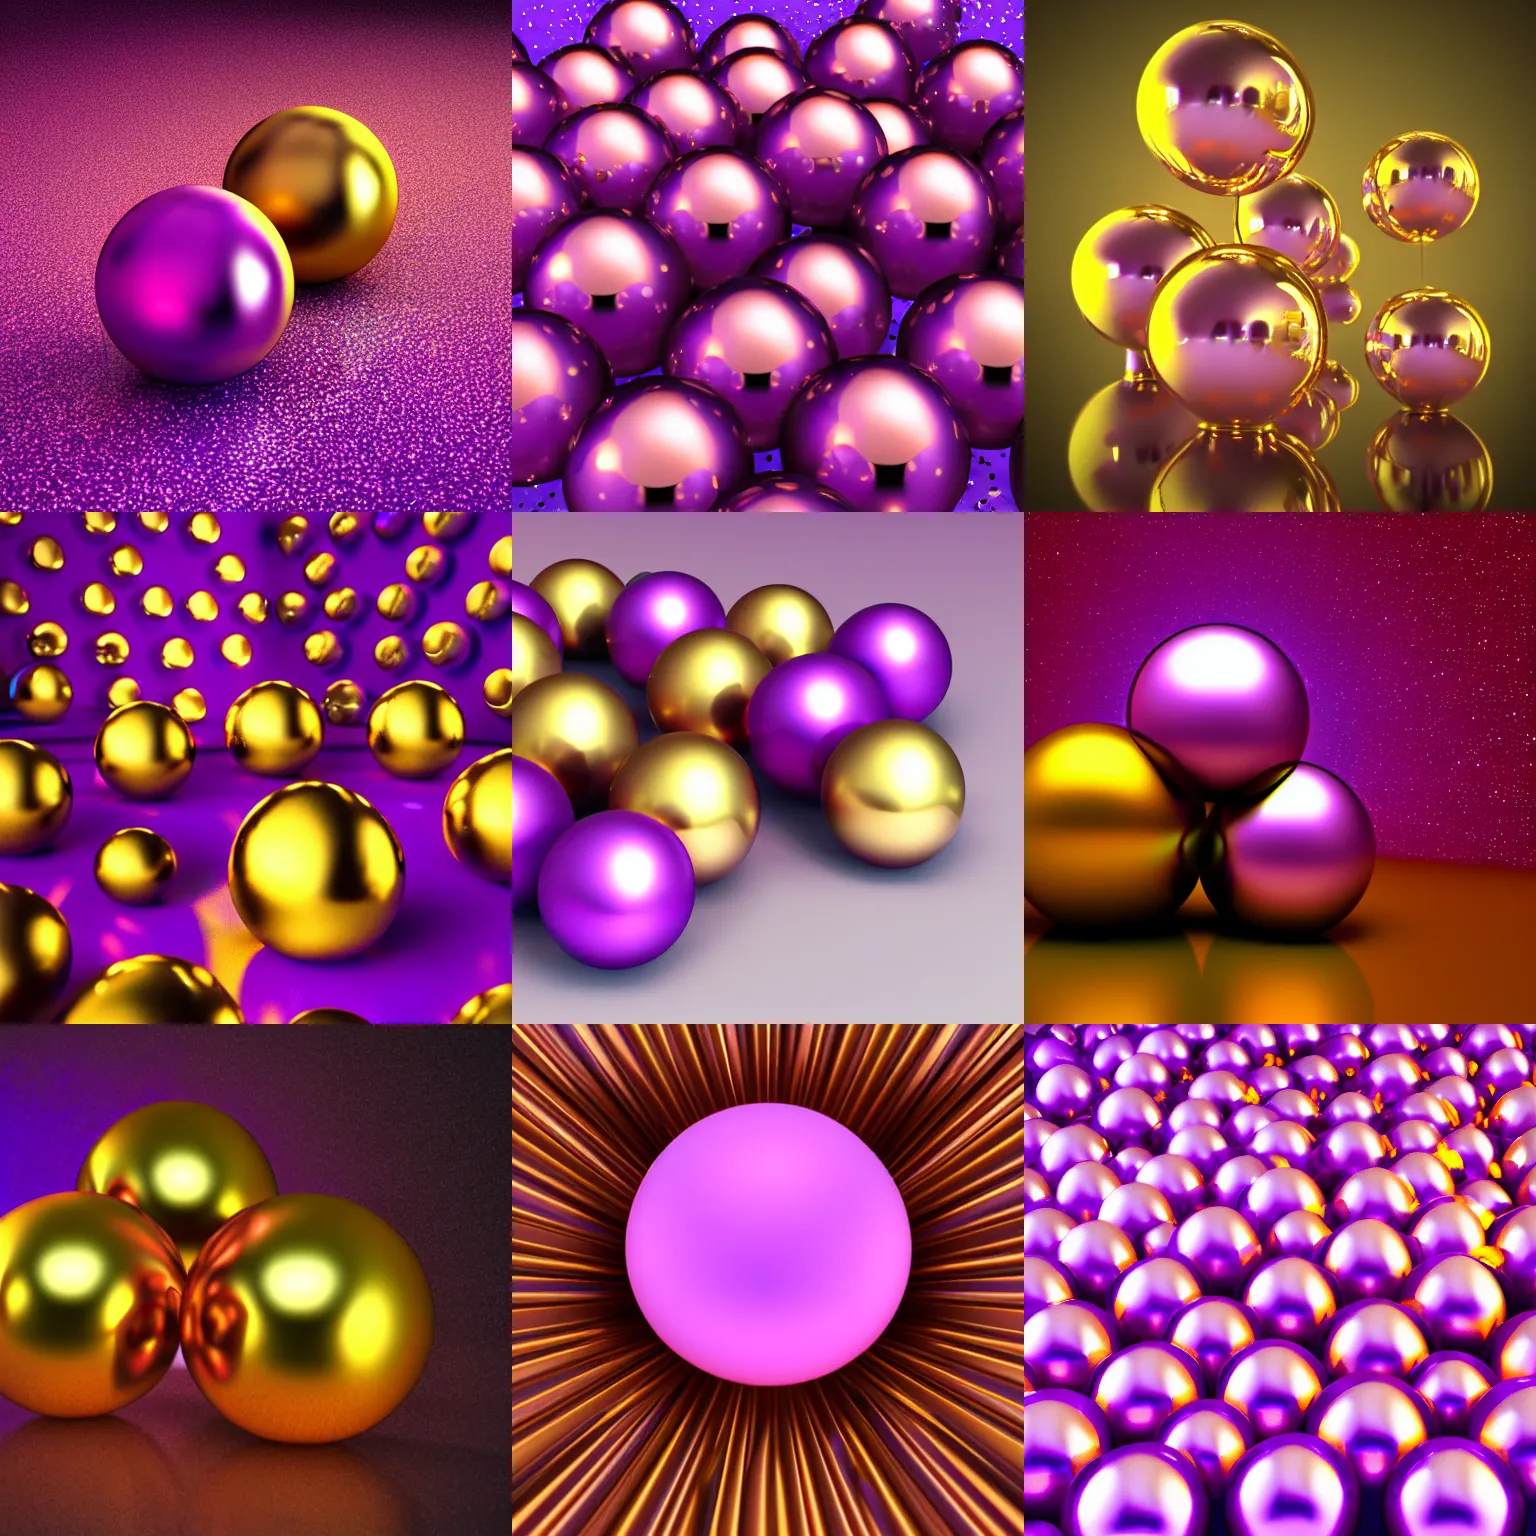 Prompt: golden balls reflecting light, violet background, digital art, 3 d render